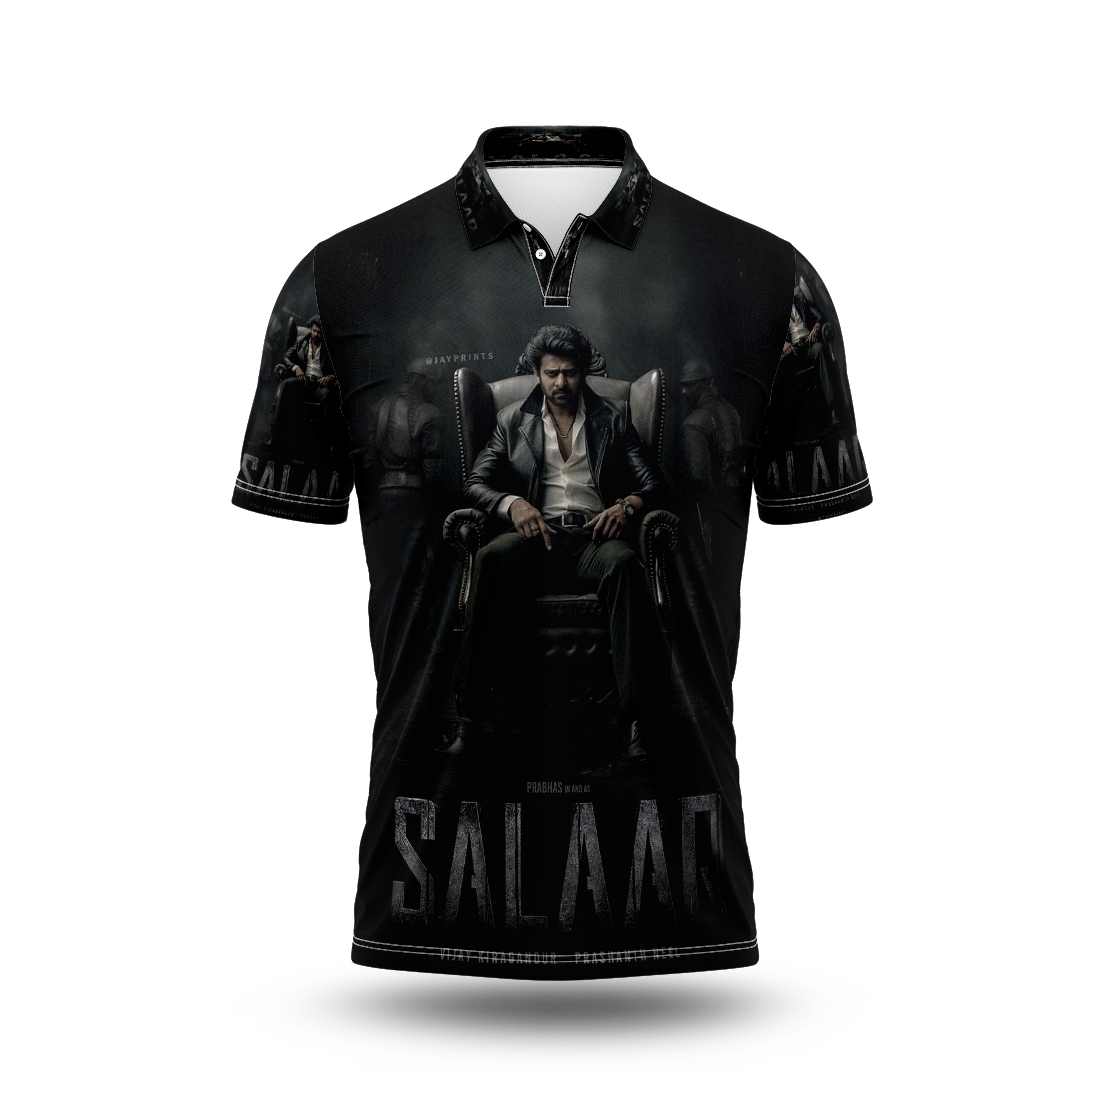 Salaar Prabas Movie Printed T-Shirt.